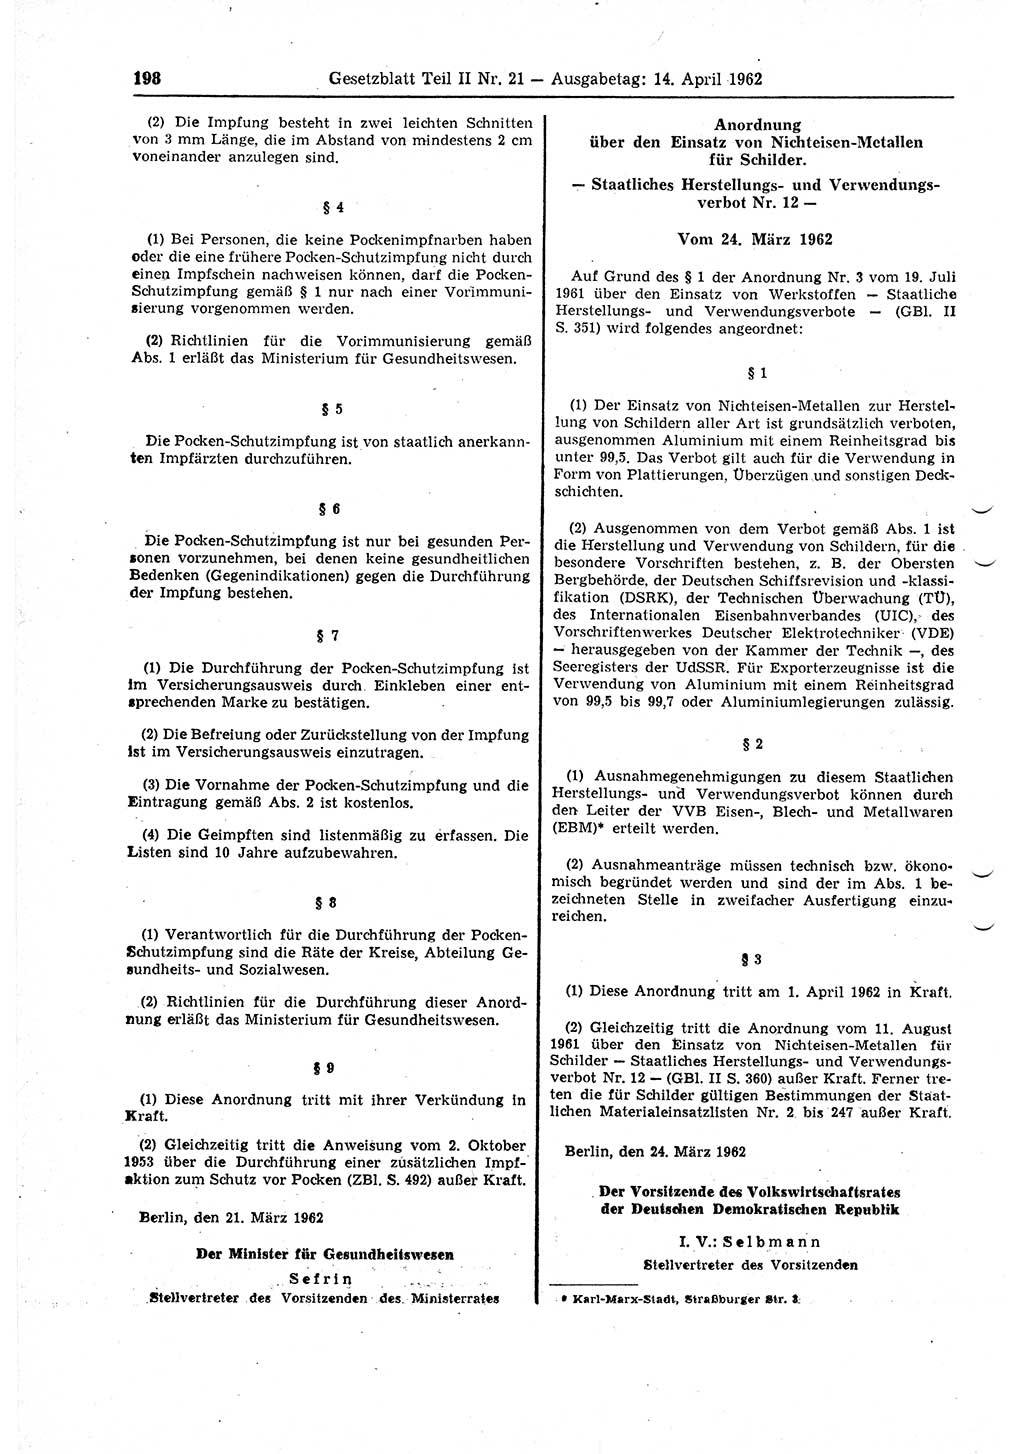 Gesetzblatt (GBl.) der Deutschen Demokratischen Republik (DDR) Teil ⅠⅠ 1962, Seite 198 (GBl. DDR ⅠⅠ 1962, S. 198)